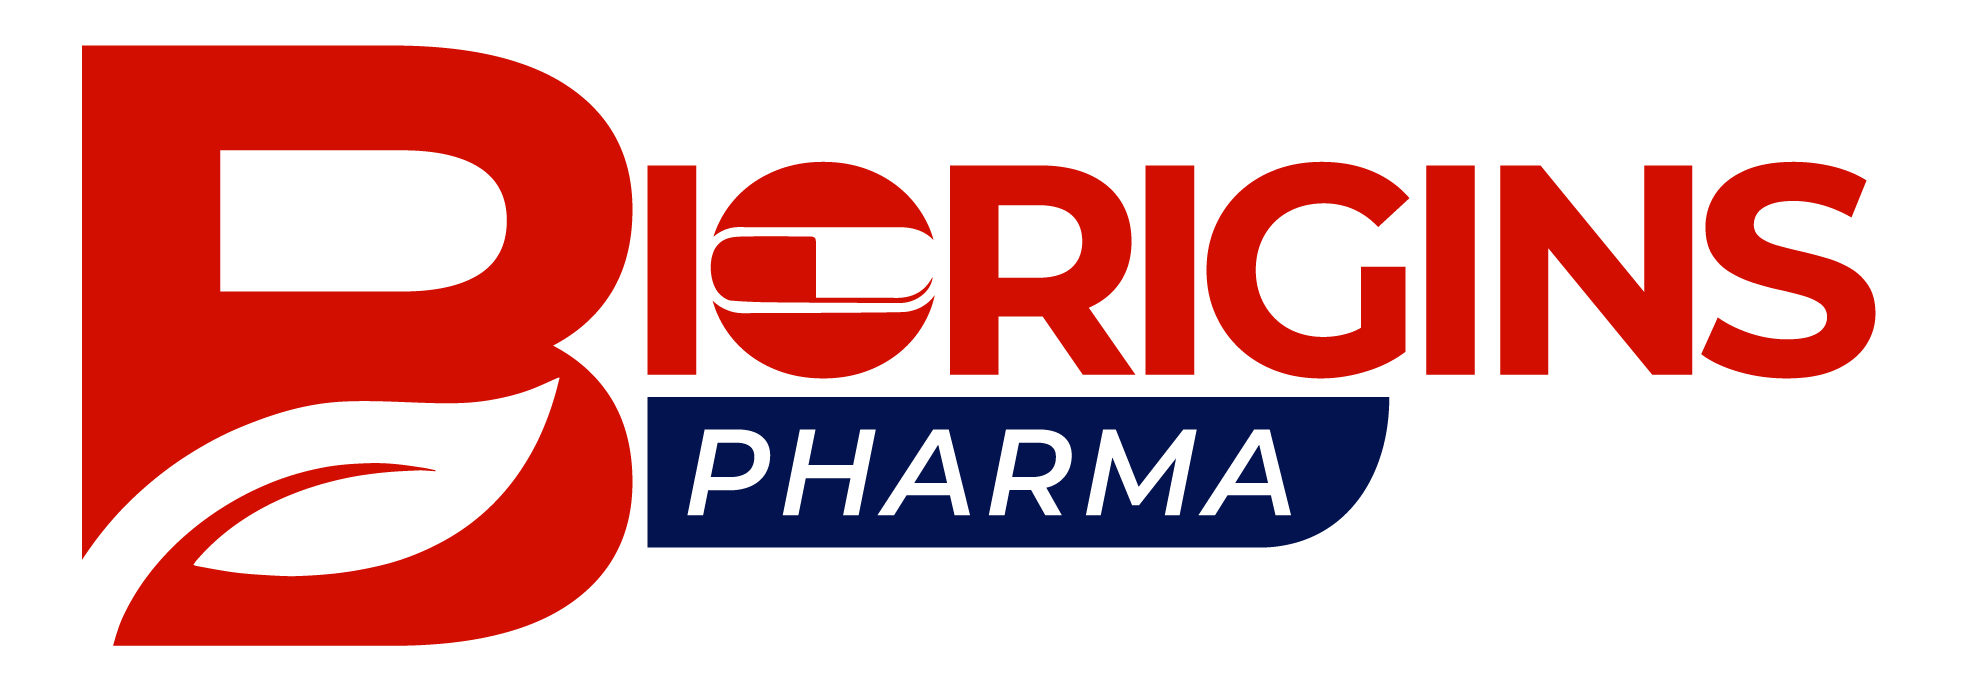 Biorigins pharma